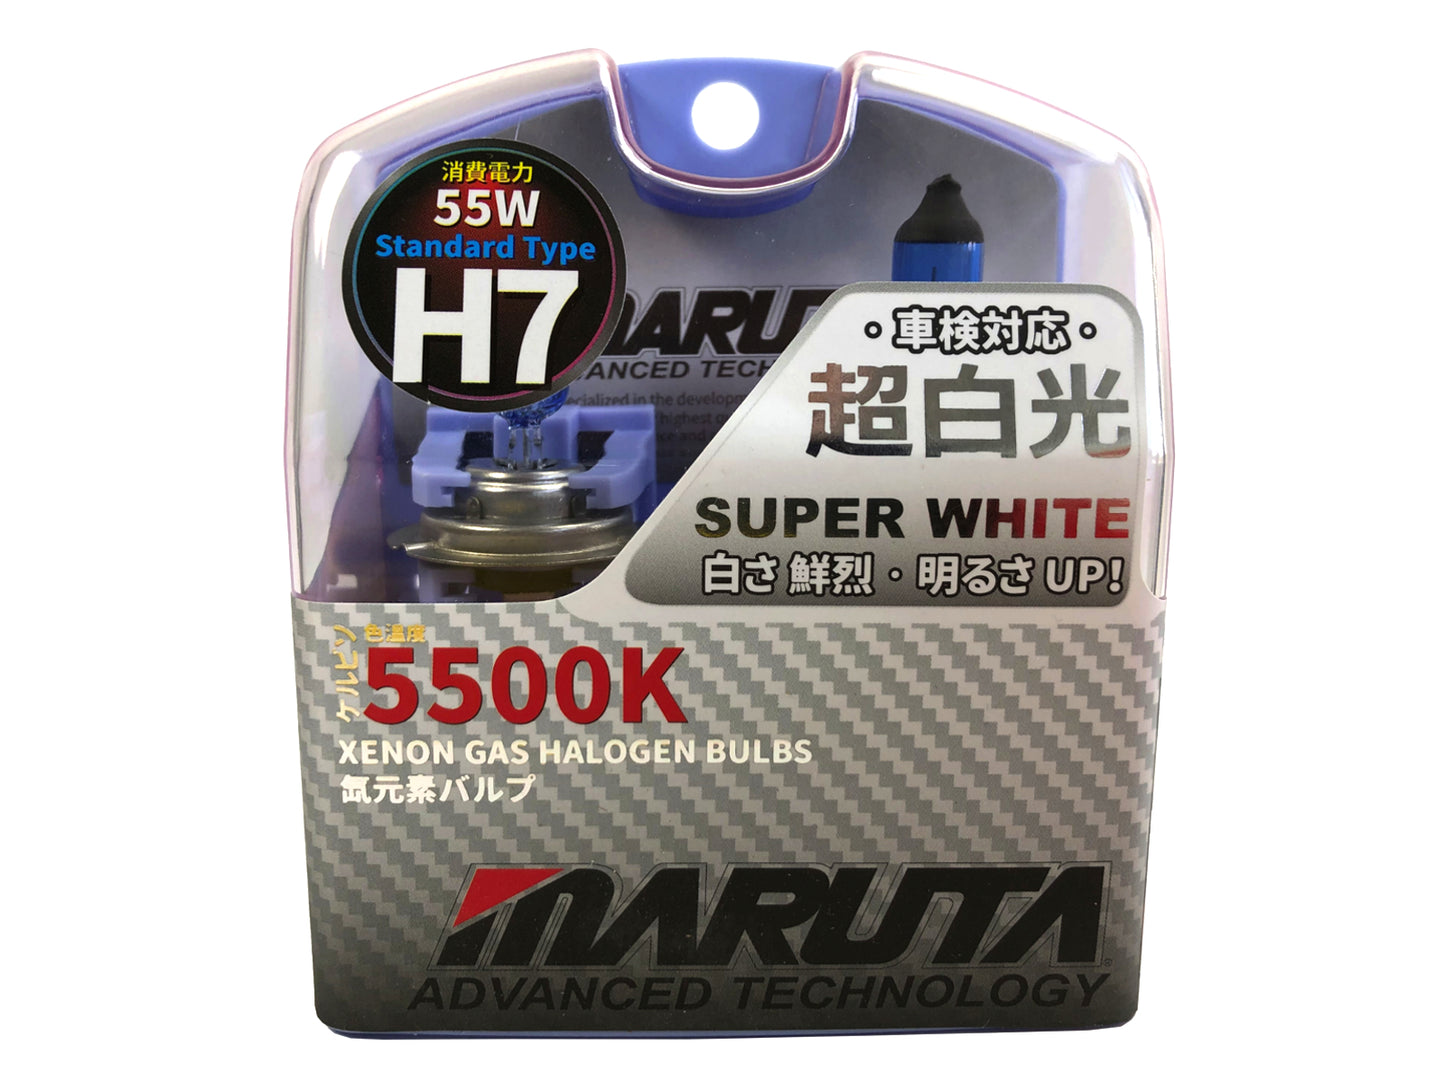 MARUTA SUPER WHITE H7 12V 55W Halogenlampe für Scheinwerfer, Abblendlicht, 5500K Xenon-Effekt, langlebige Xenon-Gas Birne mit hochwertigem Quarzglas & Straßenzulassung (ECE Prüfzeichen) - Bild 9